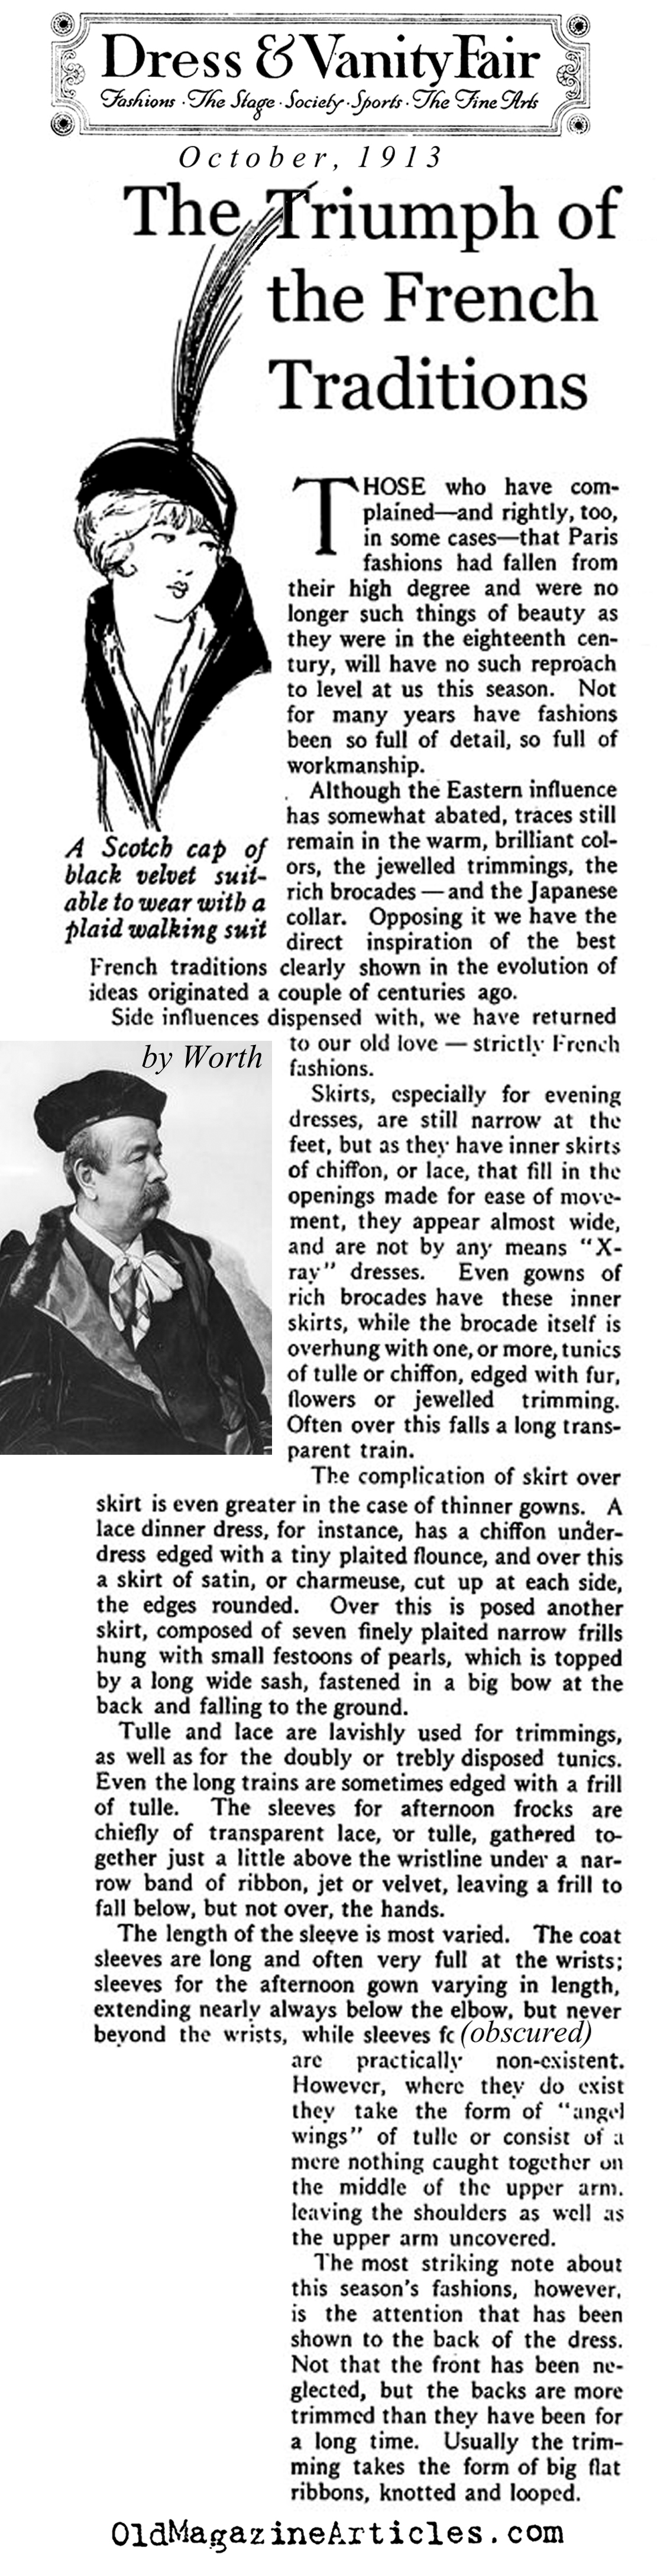 Paris Fashion, 1913 (Vanity Fair Magazine, 1913)